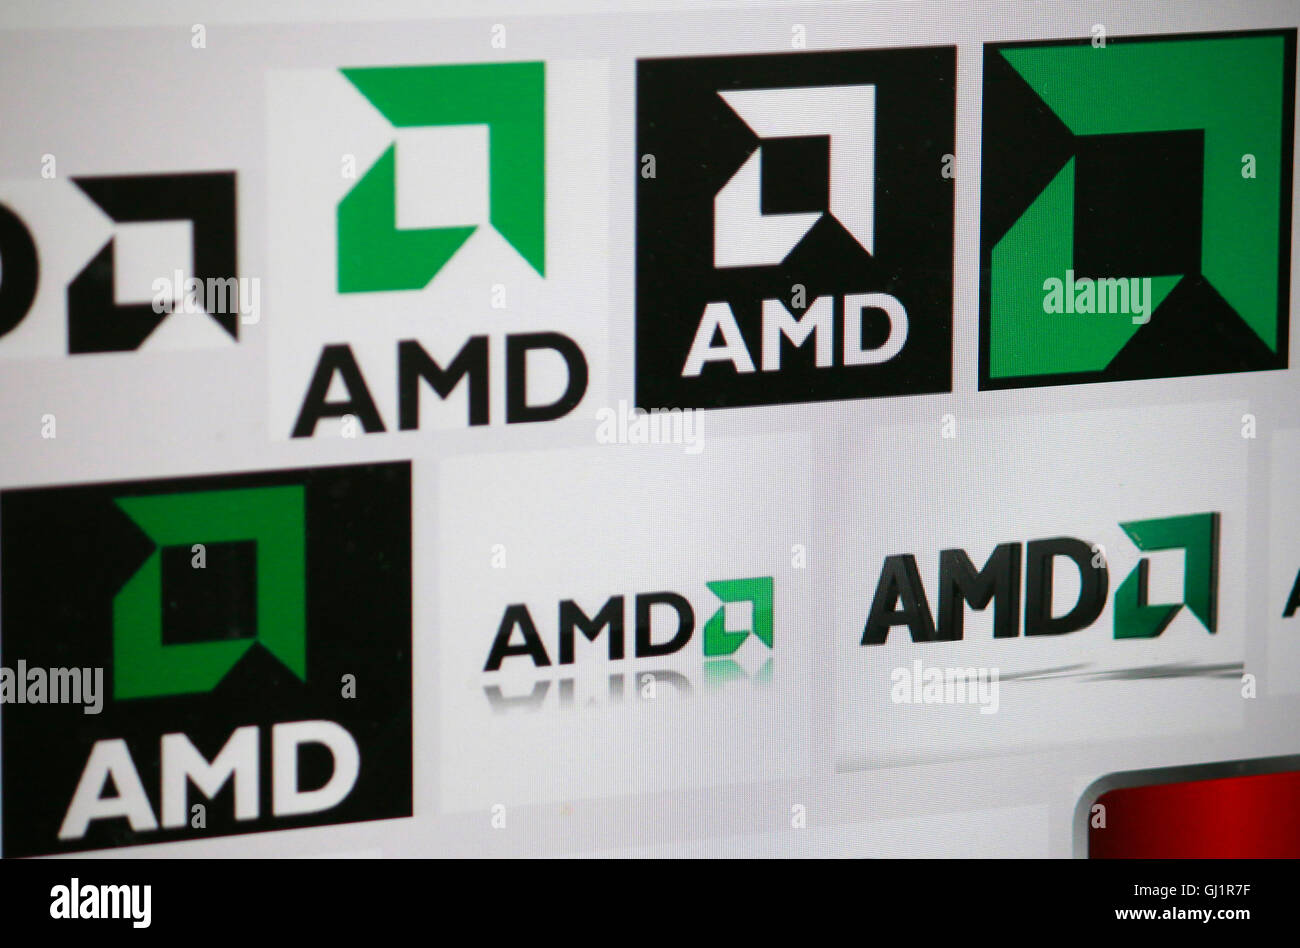 Loge der Marke "AMD", Berlin. Stockfoto